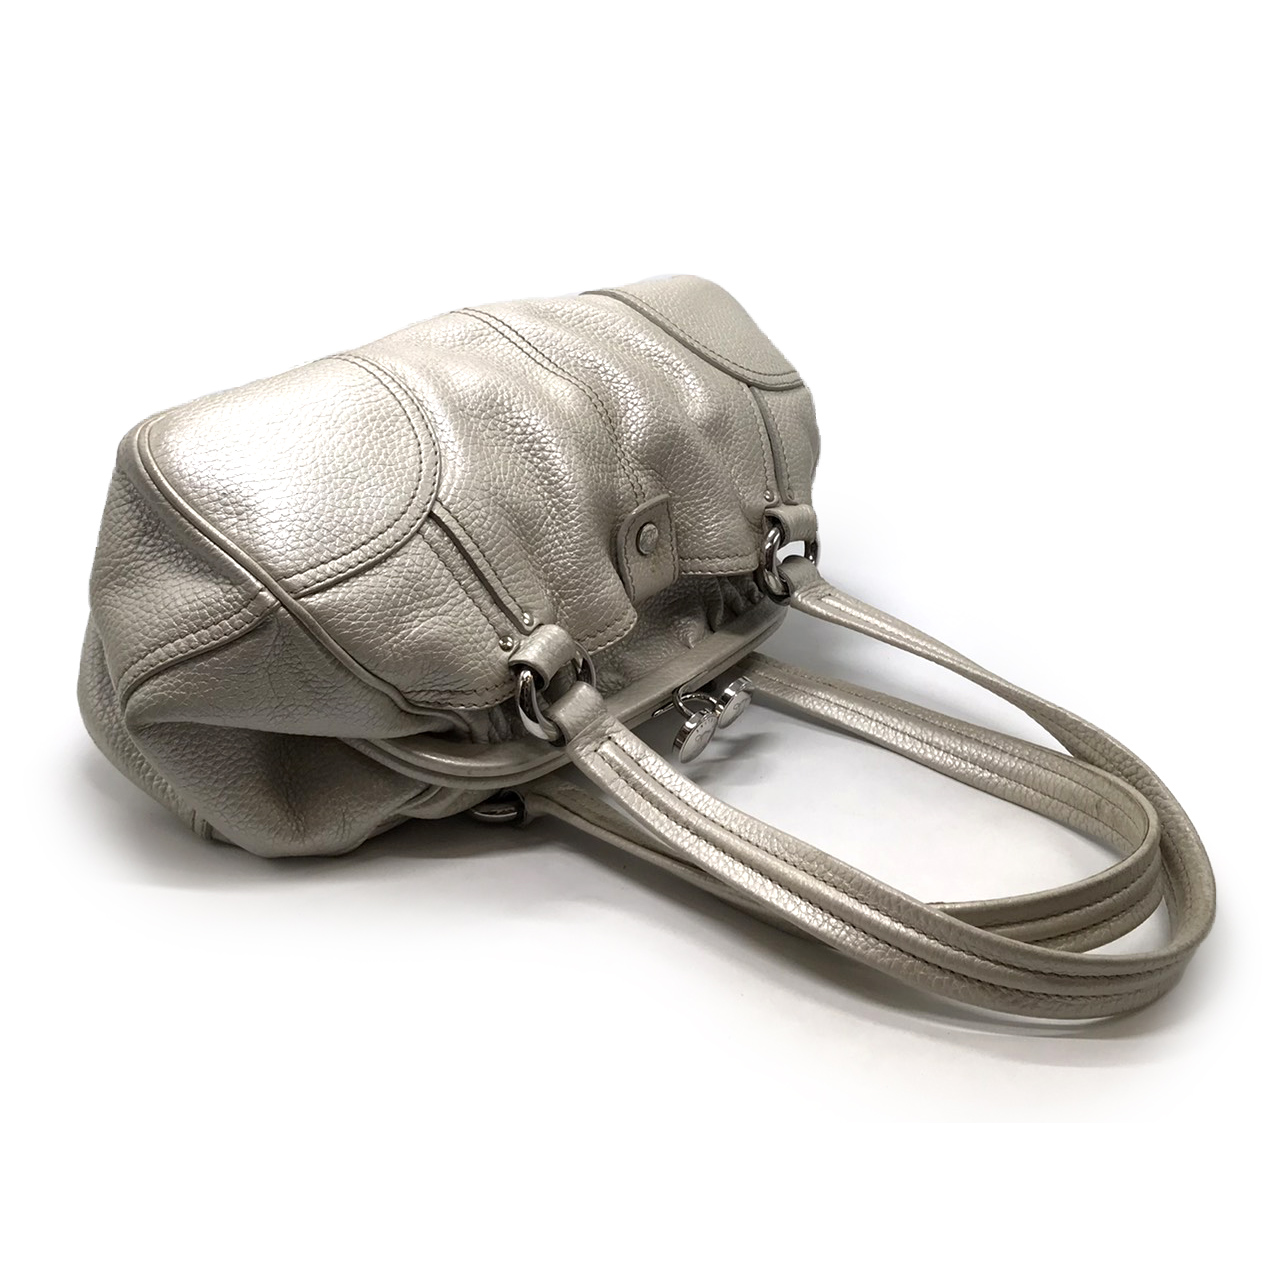 Used Celine Vintage Shoulder Bag in Platinum Leather SHW